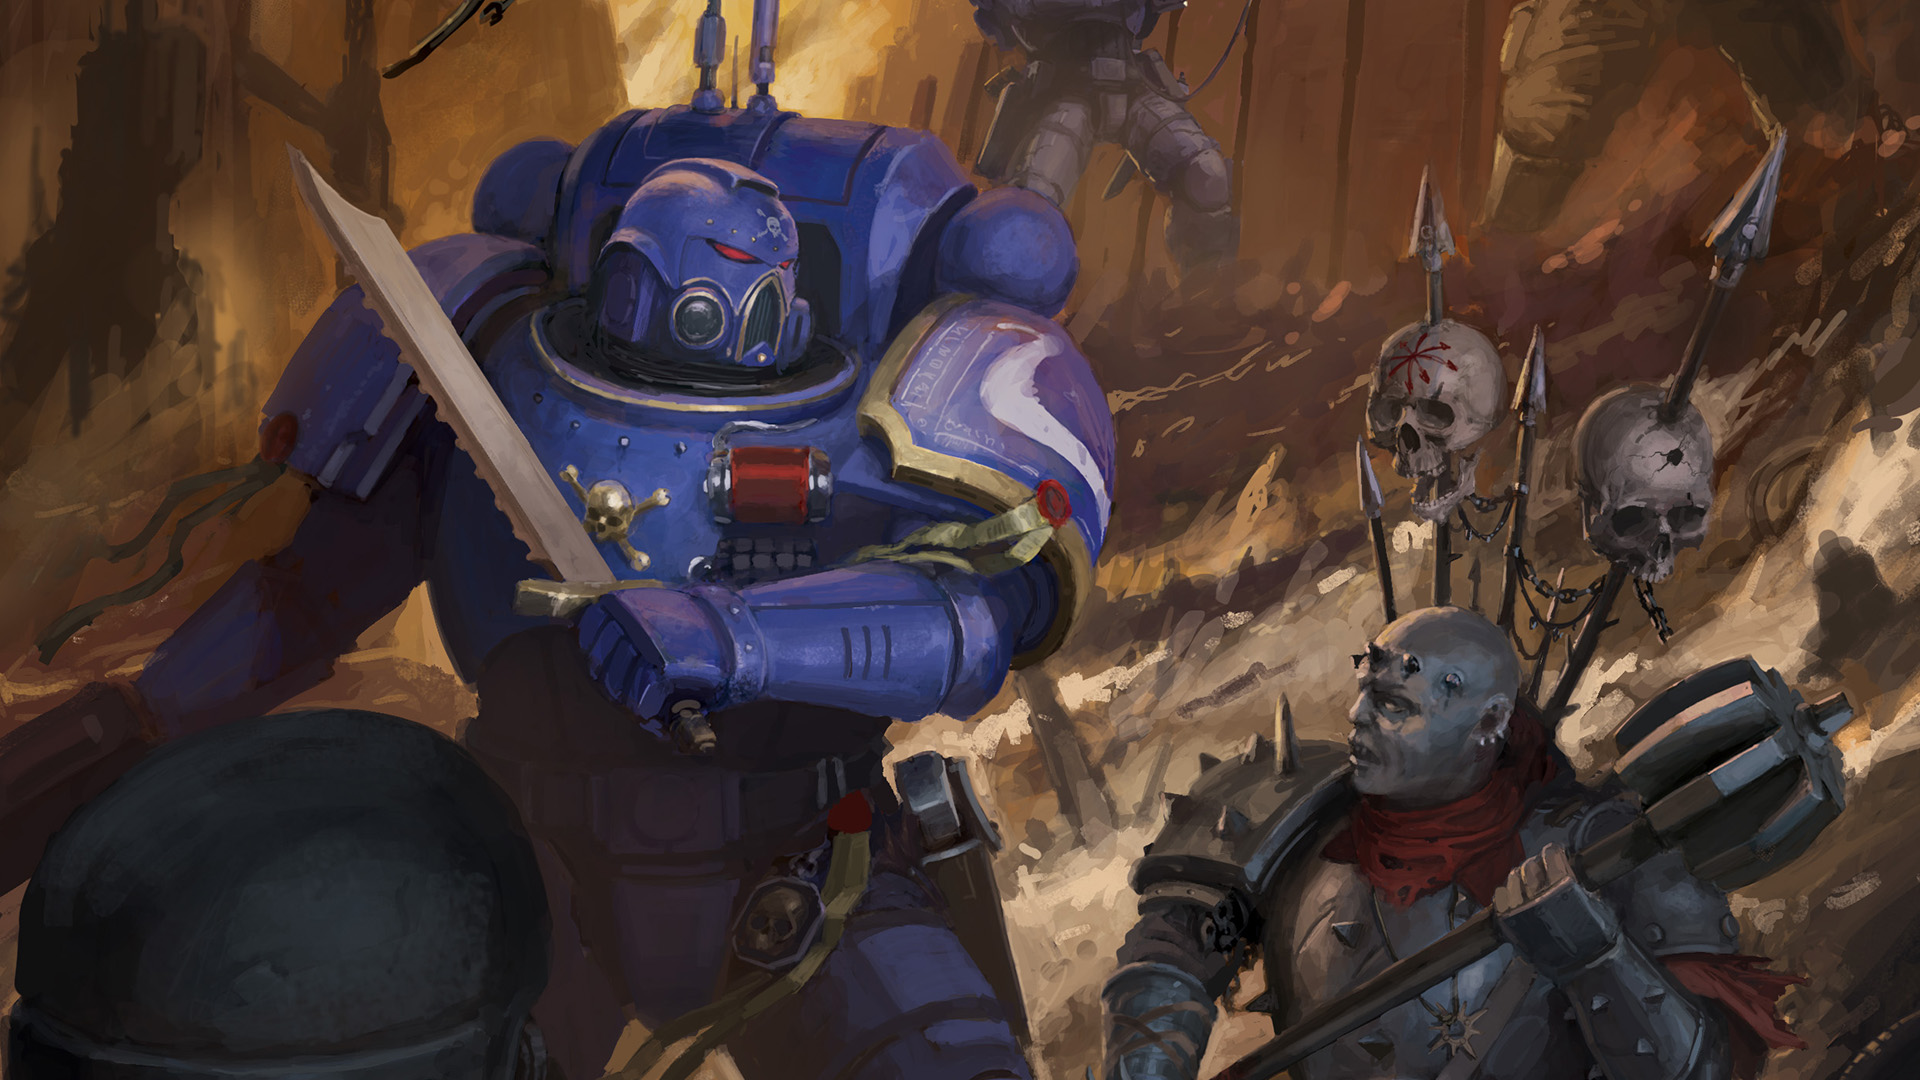 Warhammer 40,000: Kill Team Box Set